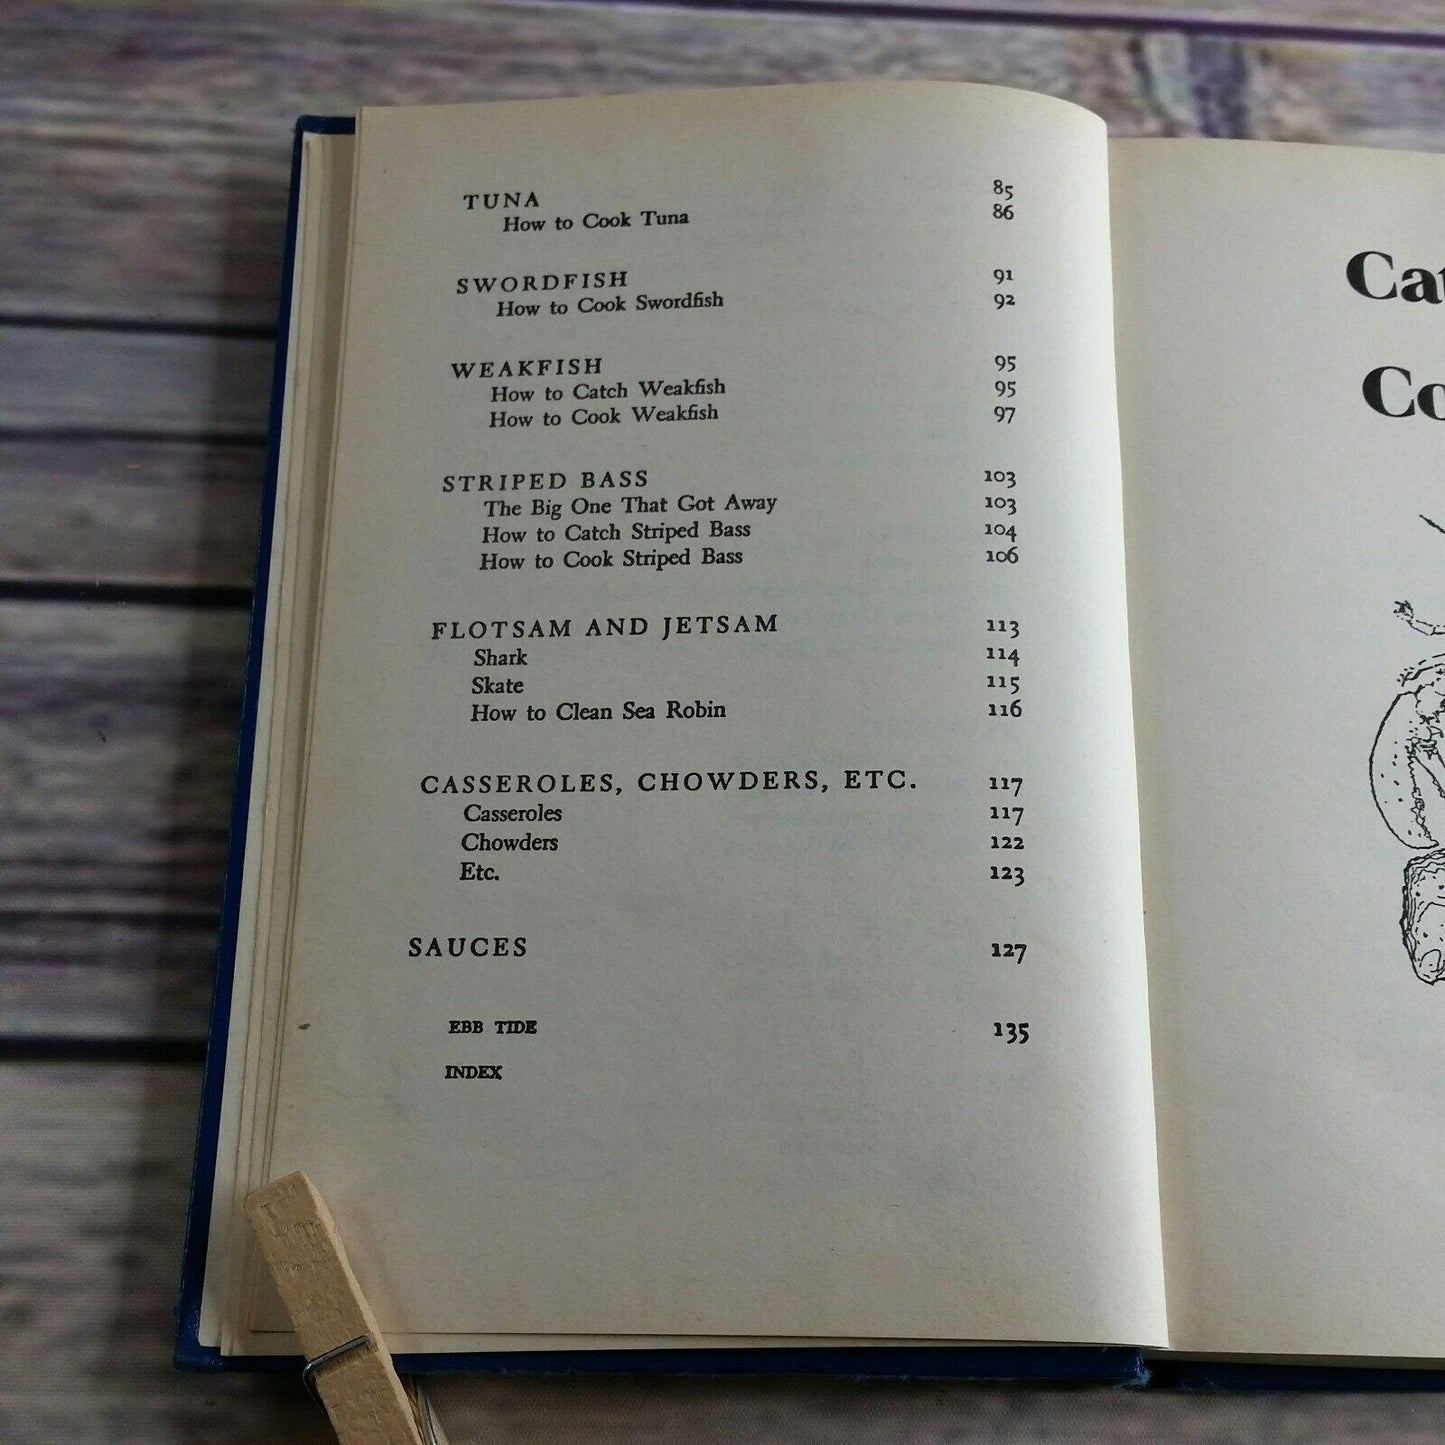 Vintage Seafood Cookbook Catch Em Hook Em Cook Em 1980 Bunny Day Hardcover NO Dust Jacket 2 Books in One 1980s